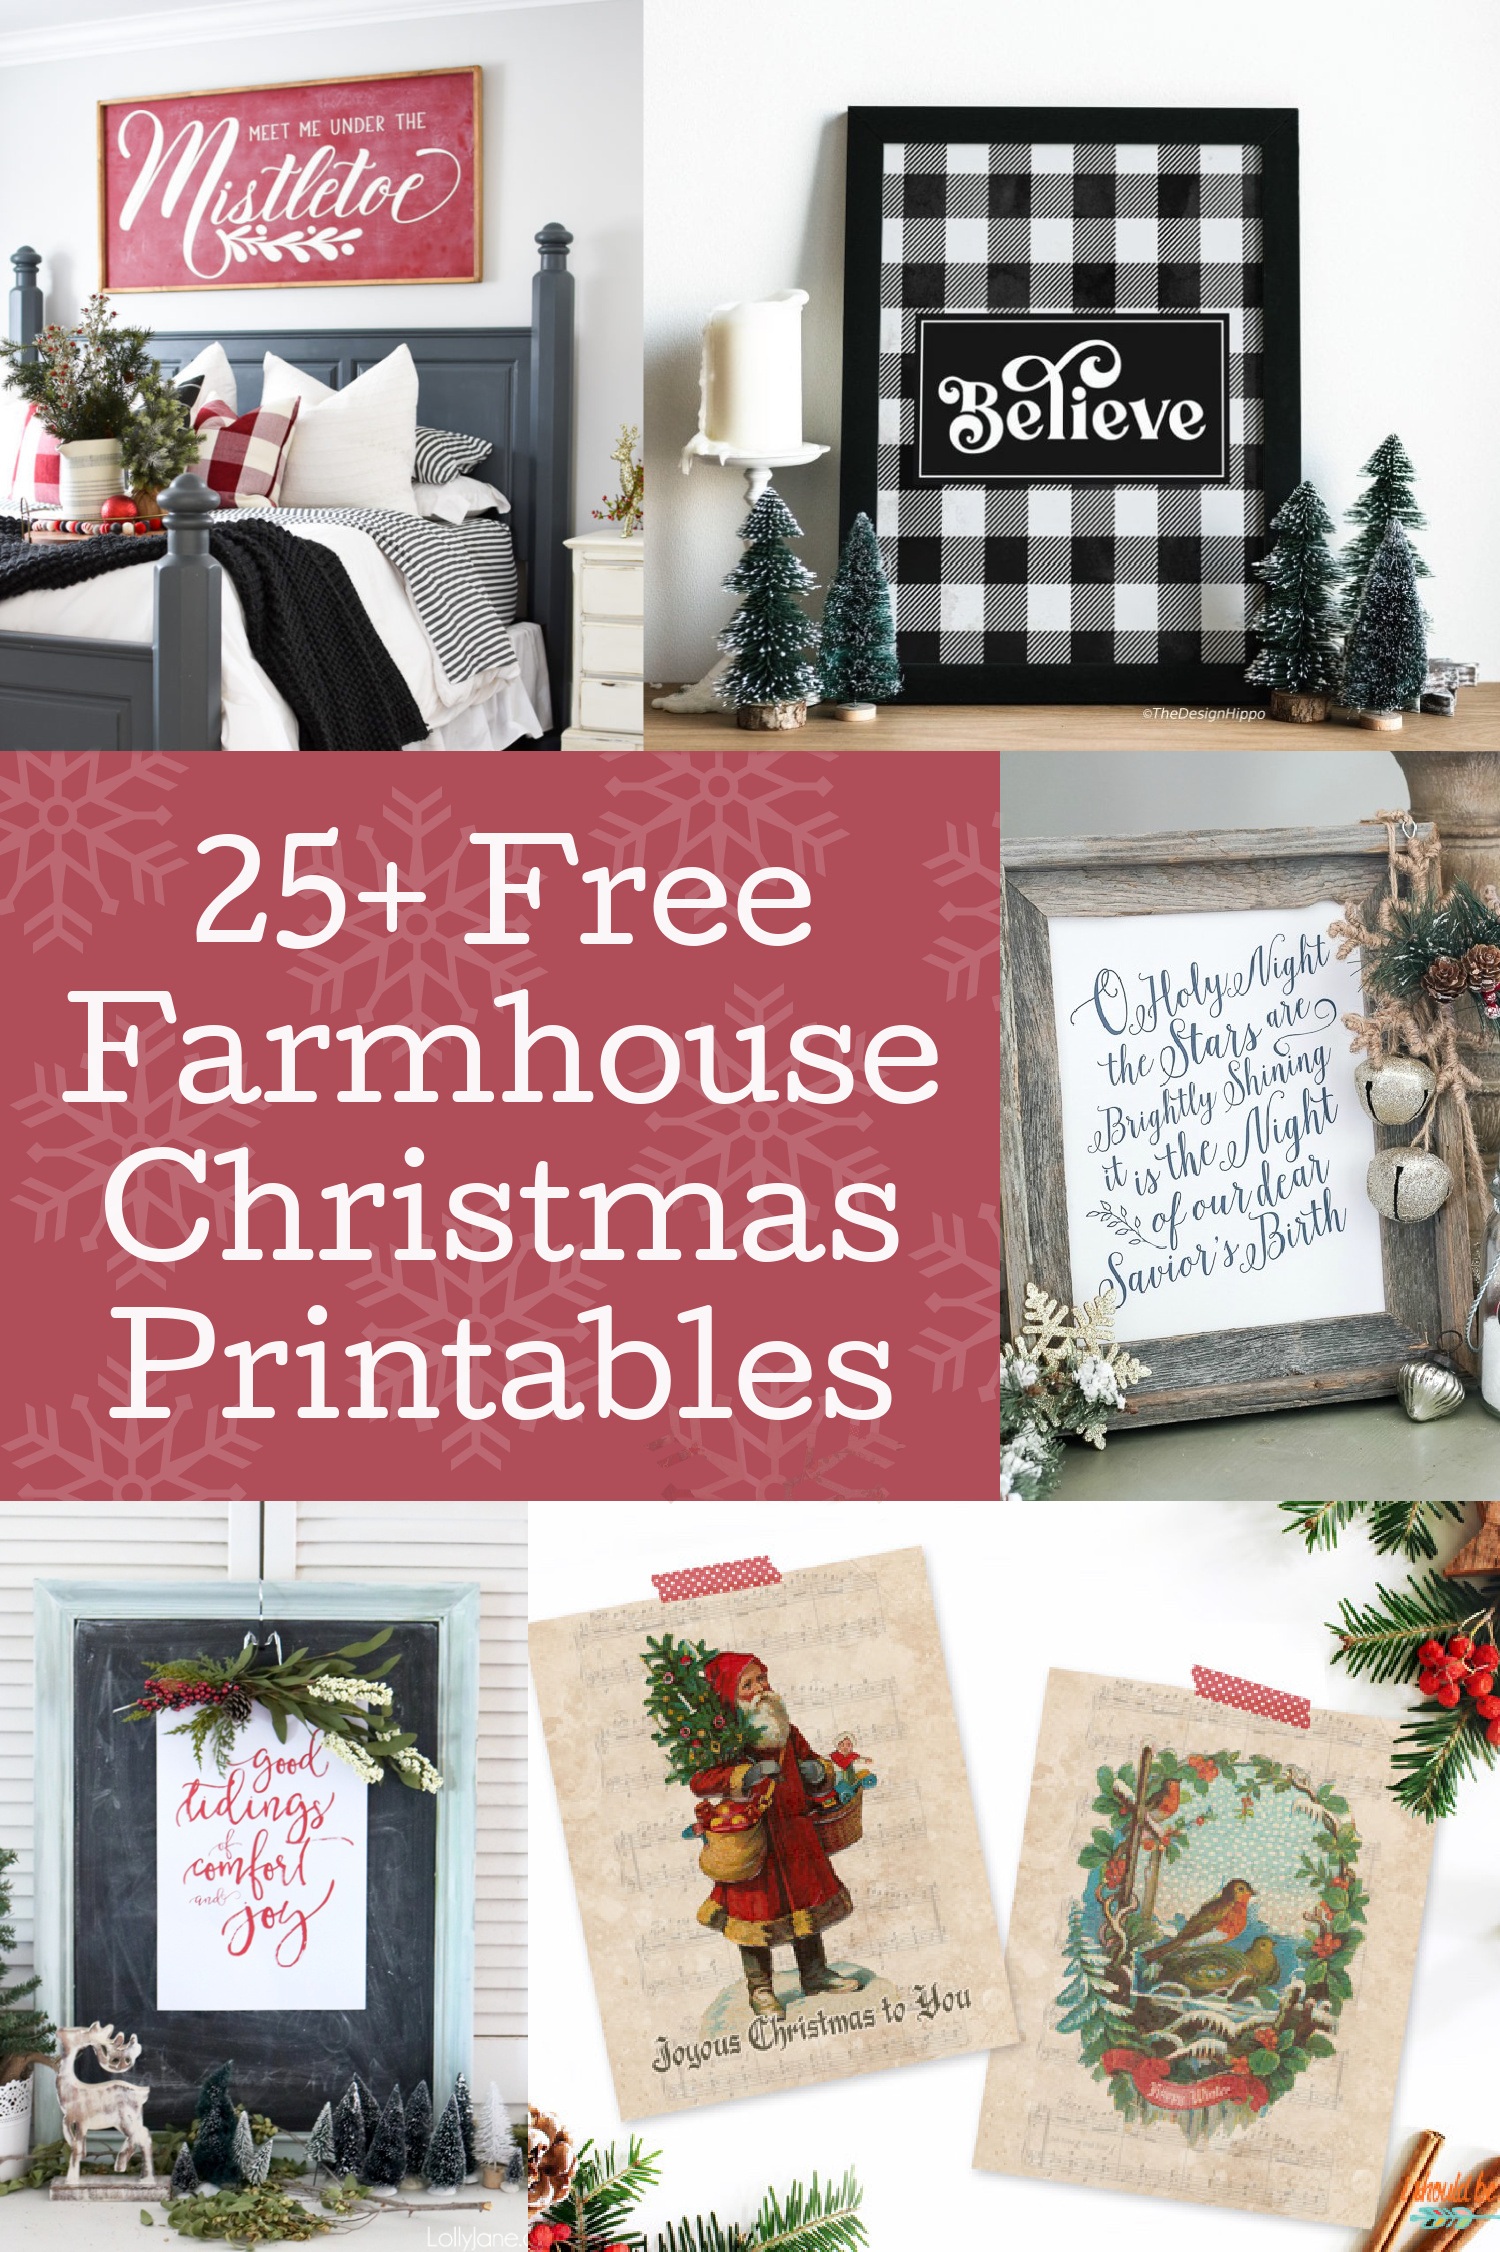 Free Farmhouse Christmas Printables